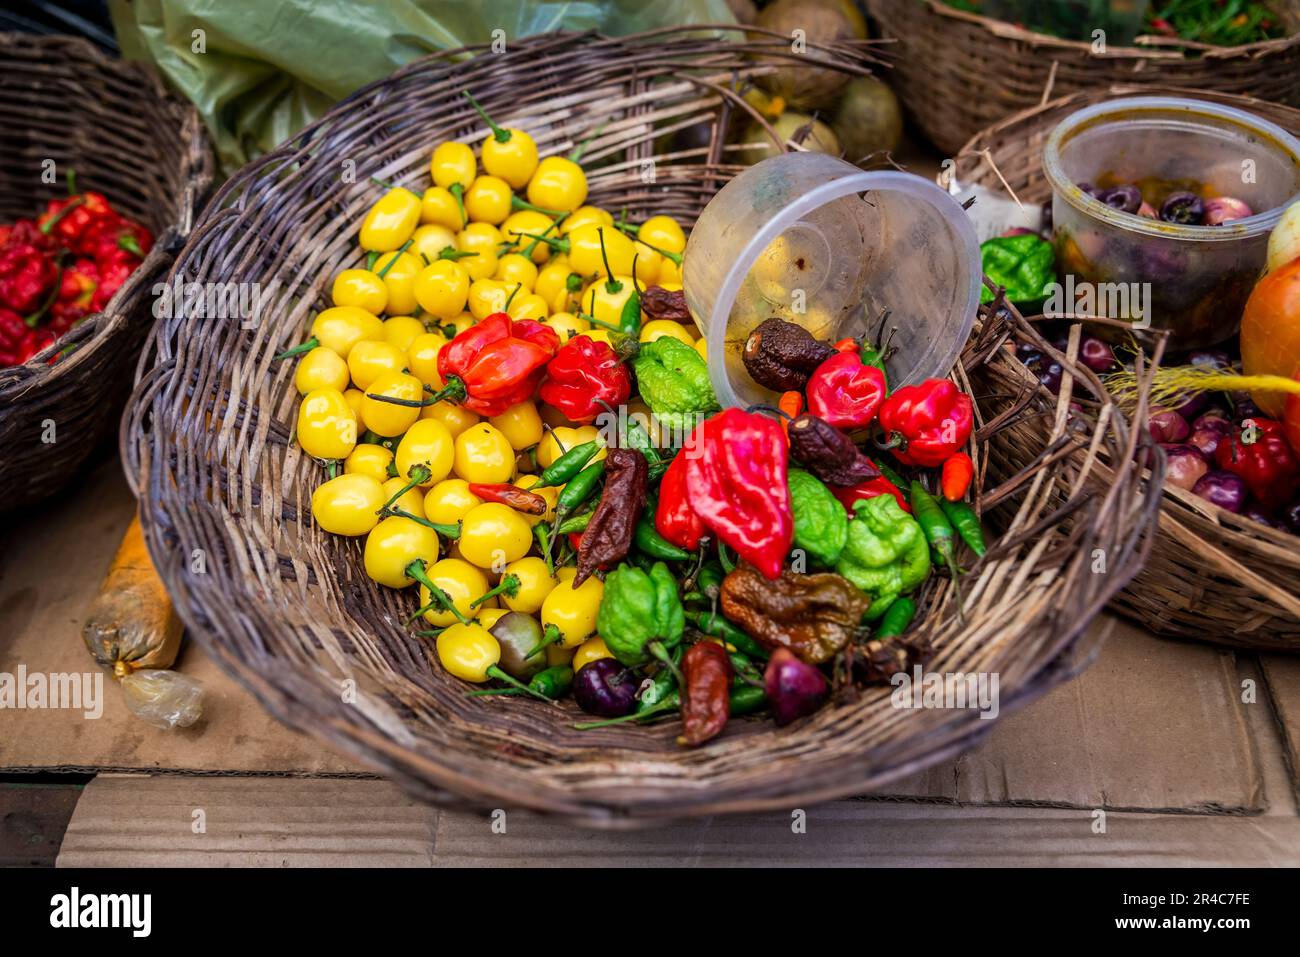 Un assortiment de fruits et légumes frais et vivants présentés dans des paniers en osier avec couvercles en plastique Banque D'Images